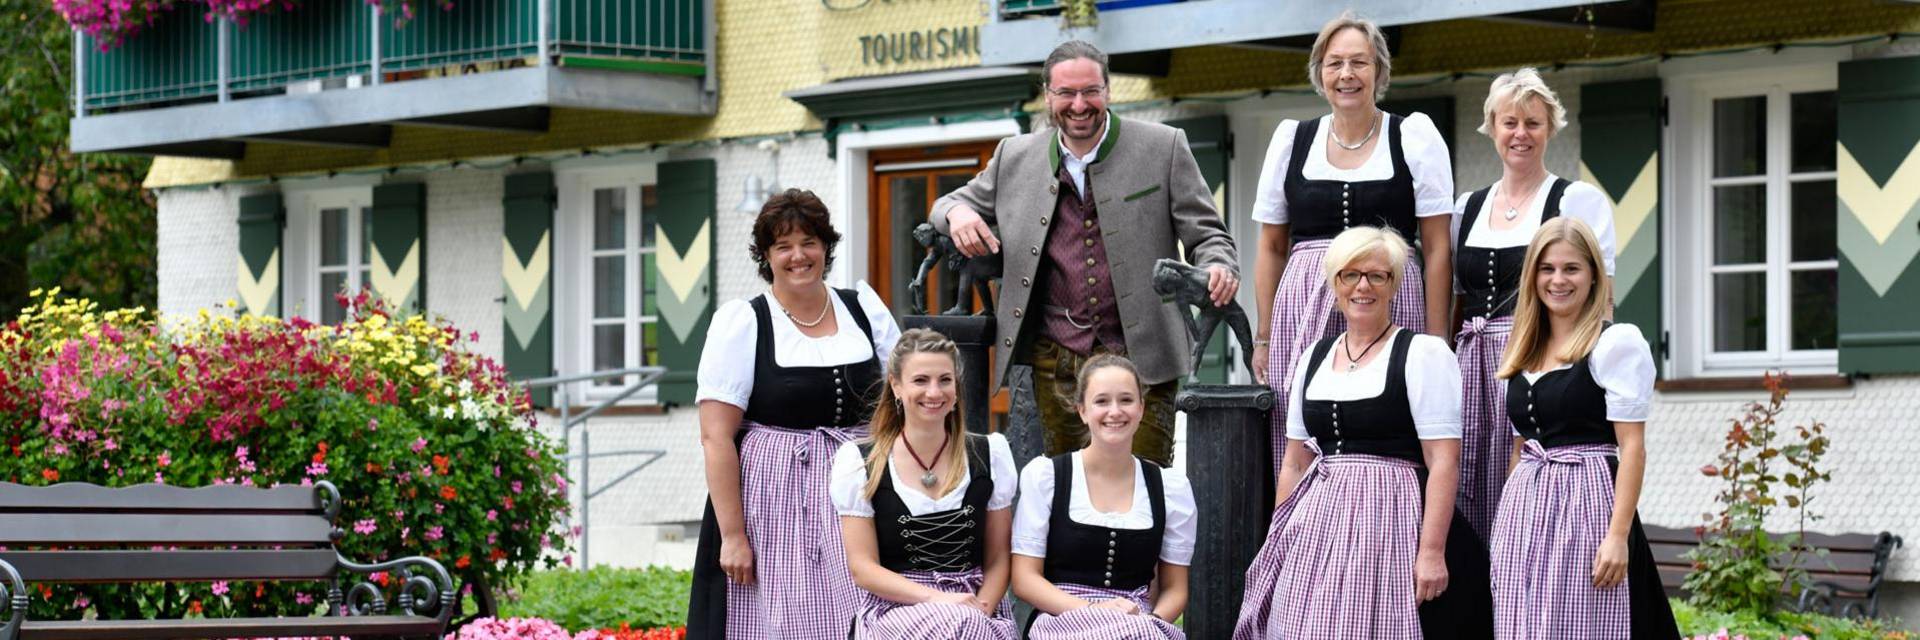 Scheidegg-Tourismus Team